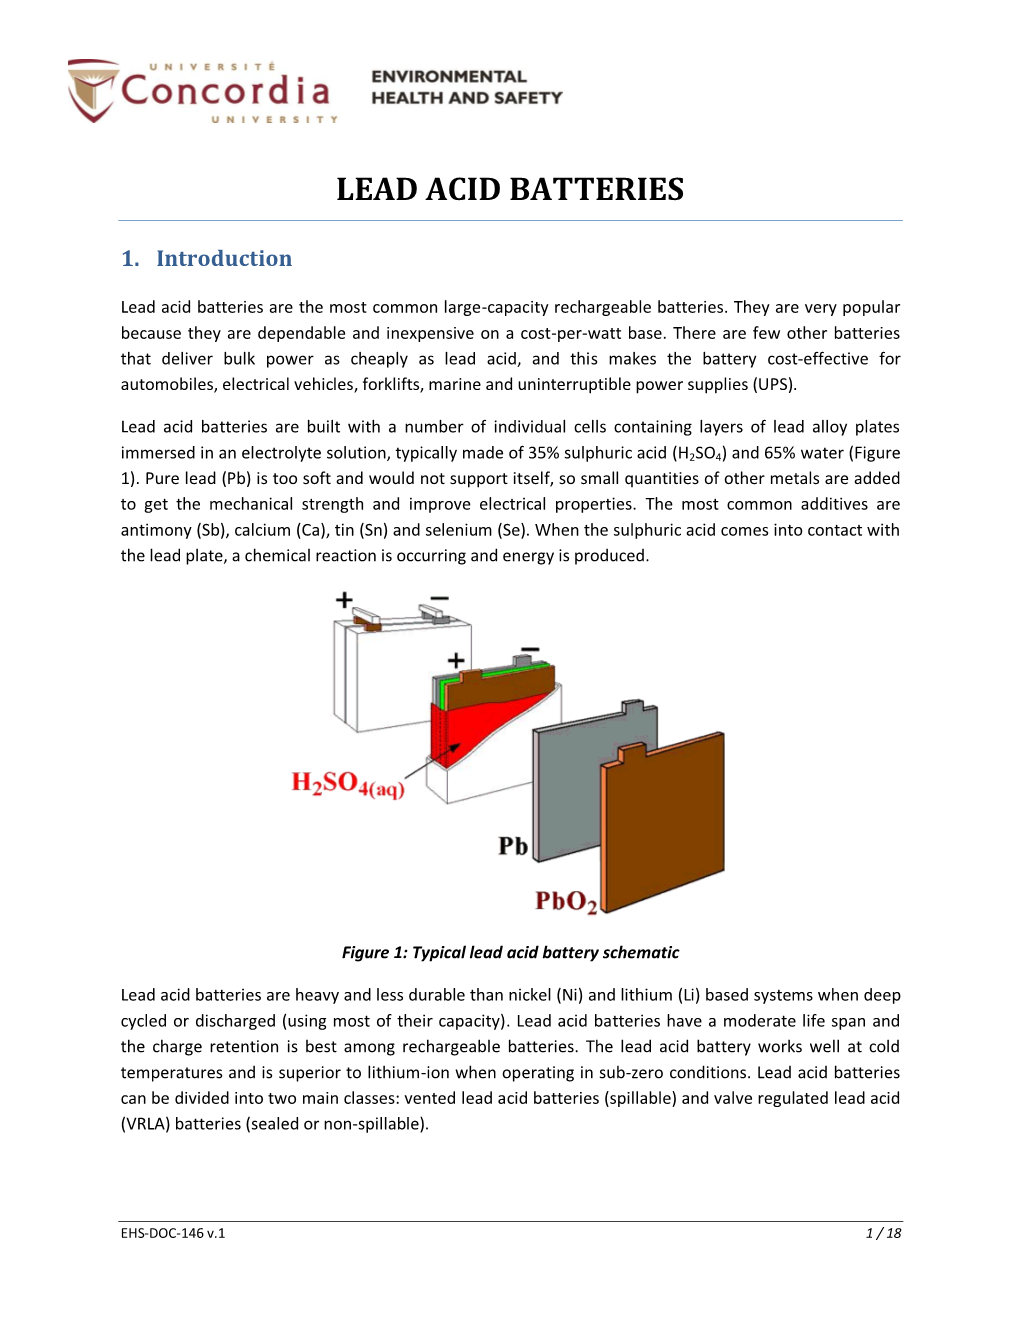 Lead Acid Batteries